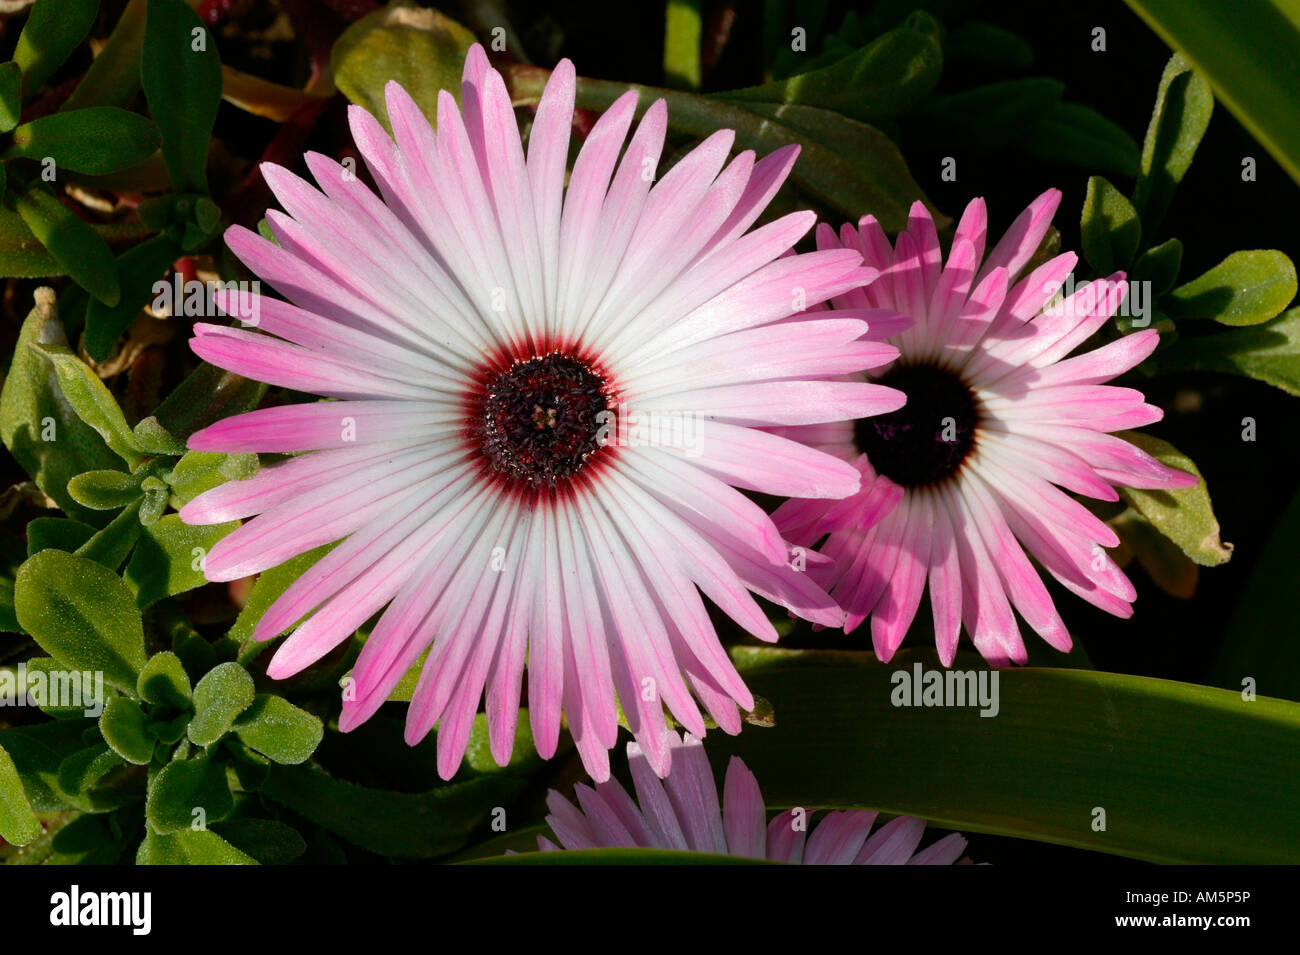 Purple garden midday flower Mesembryanthenum criniflorum, South Africa Stock Photo